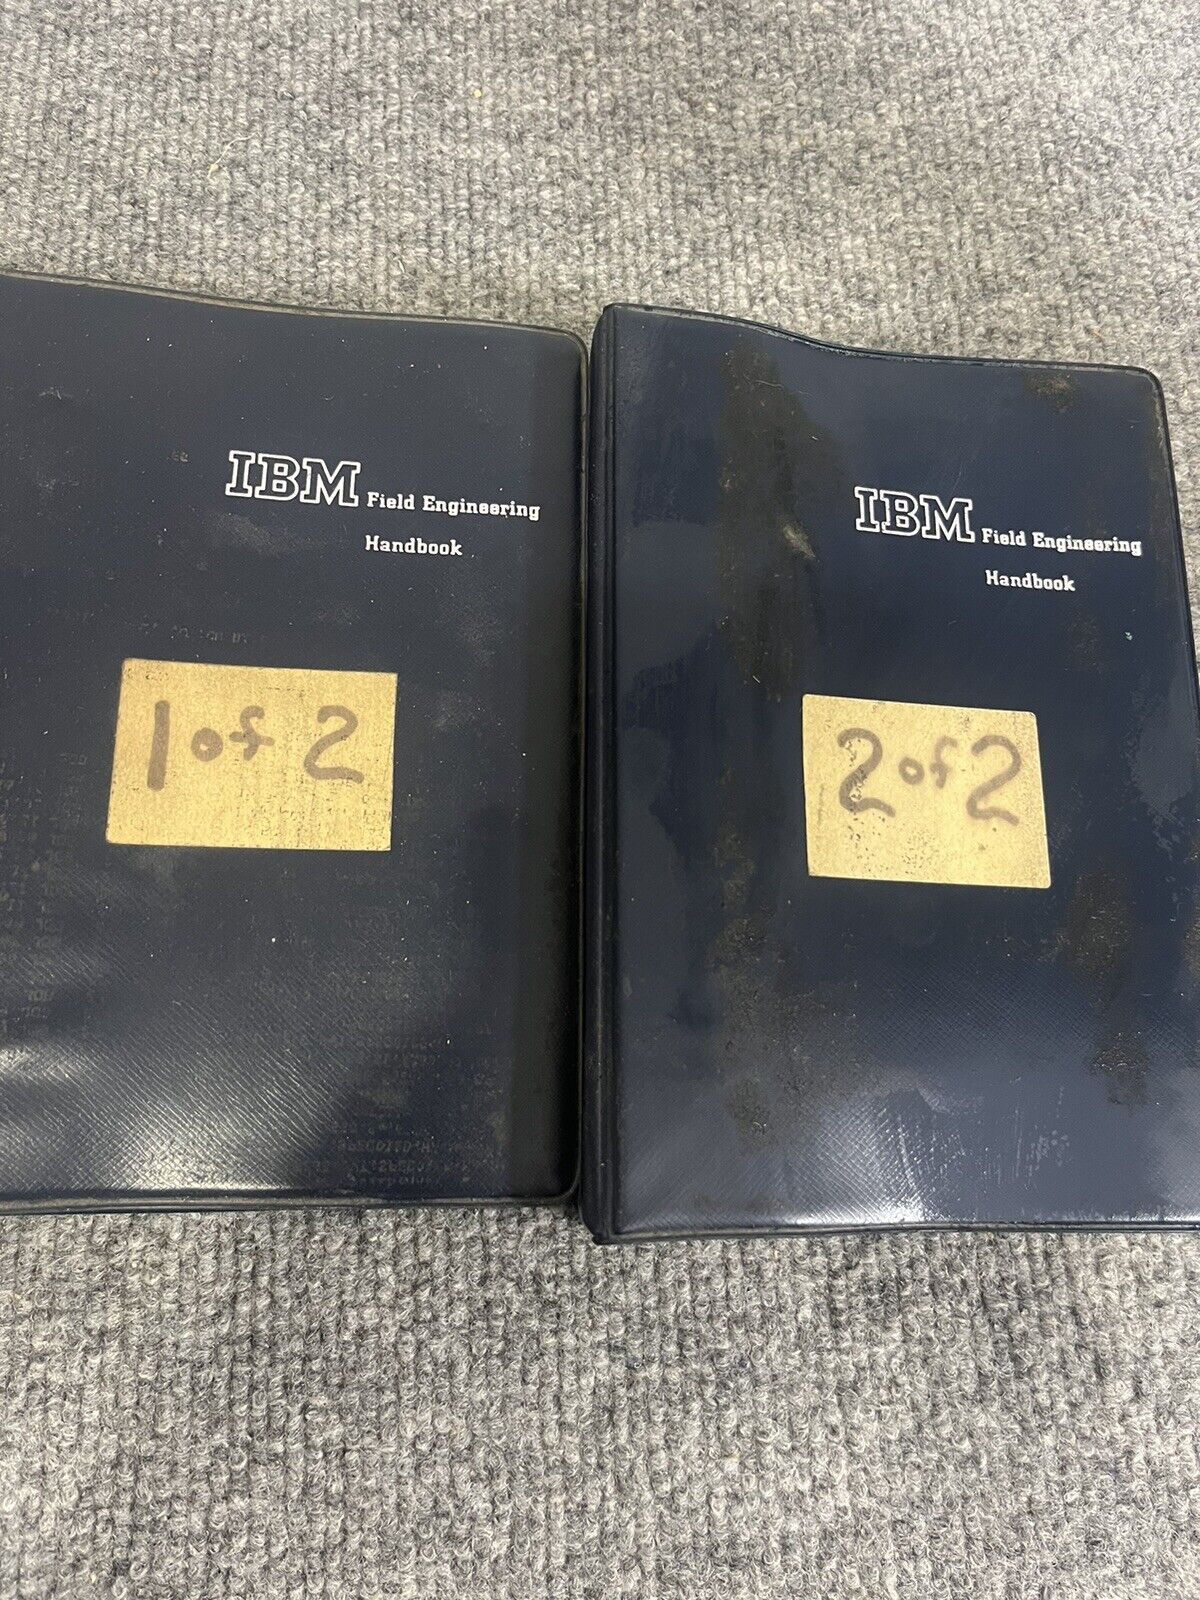 Vintage 1975 IBM Field Engineering Handbooks